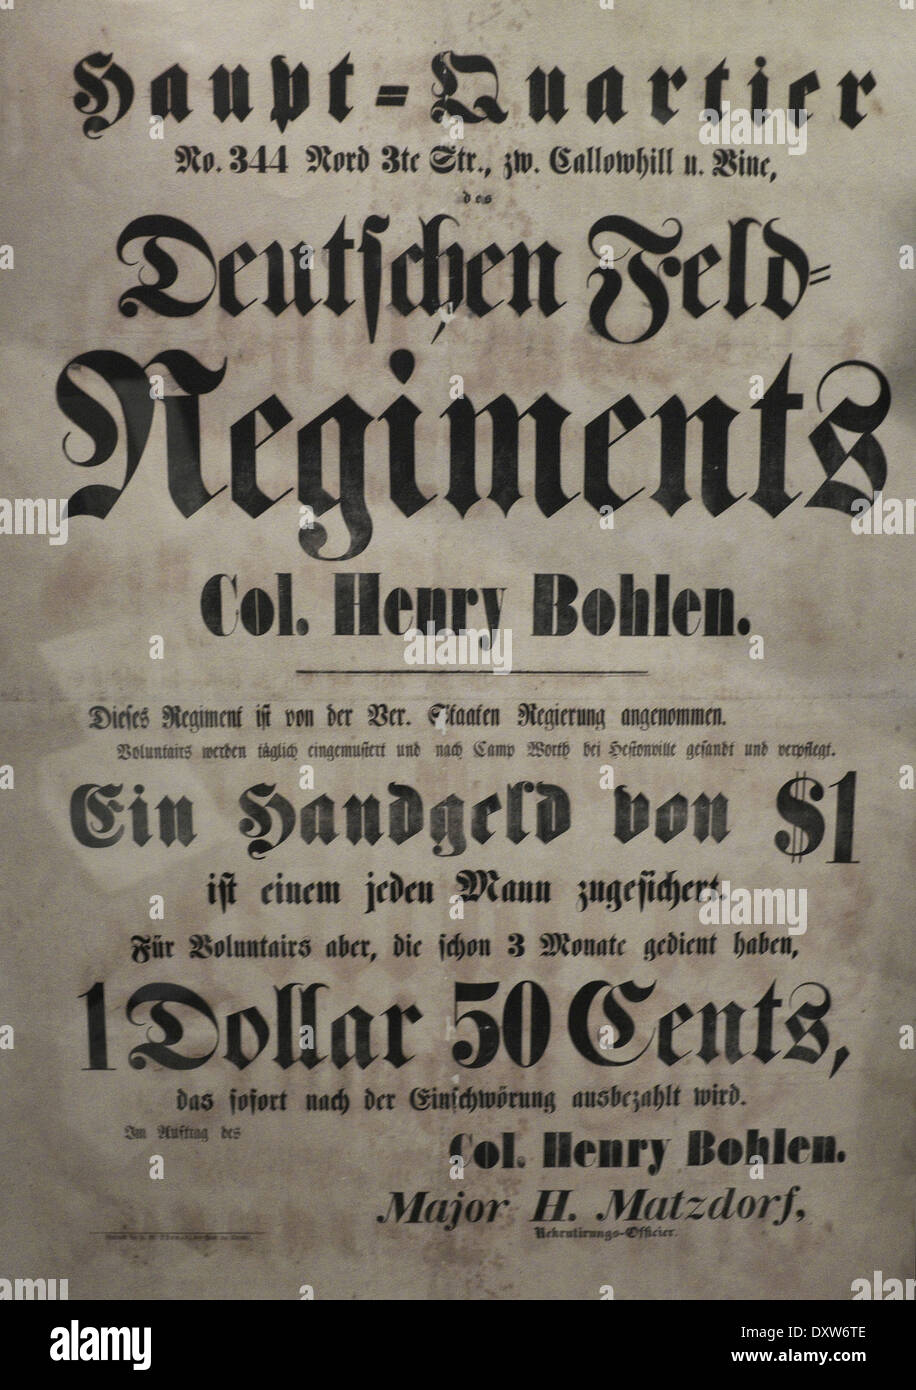 Rekrutierung von deutschen Plakat in USA Bürgerkrieg - Deutschlandzentrale Feld-regiment - Unterzeichnung Bonus - freiwillige Stockfoto